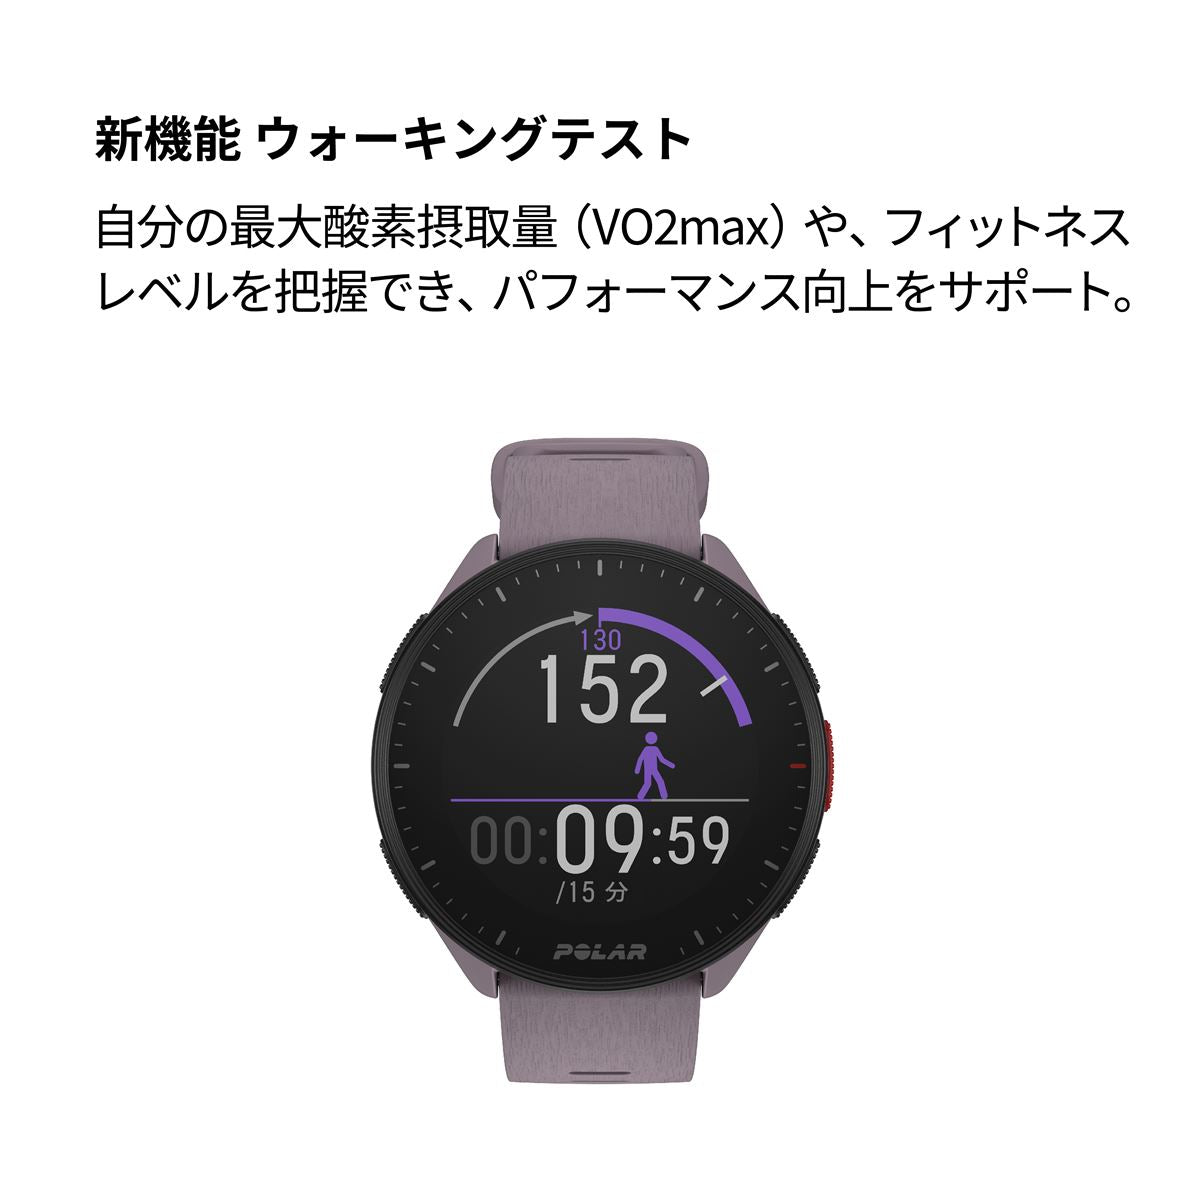 ポラール POLAR PACER スマートウォッチ GPS 心拍 トレーニング ランニング マラソン 腕時計 ぺーサー ライラックパープル S-L 900102177 日本正規品